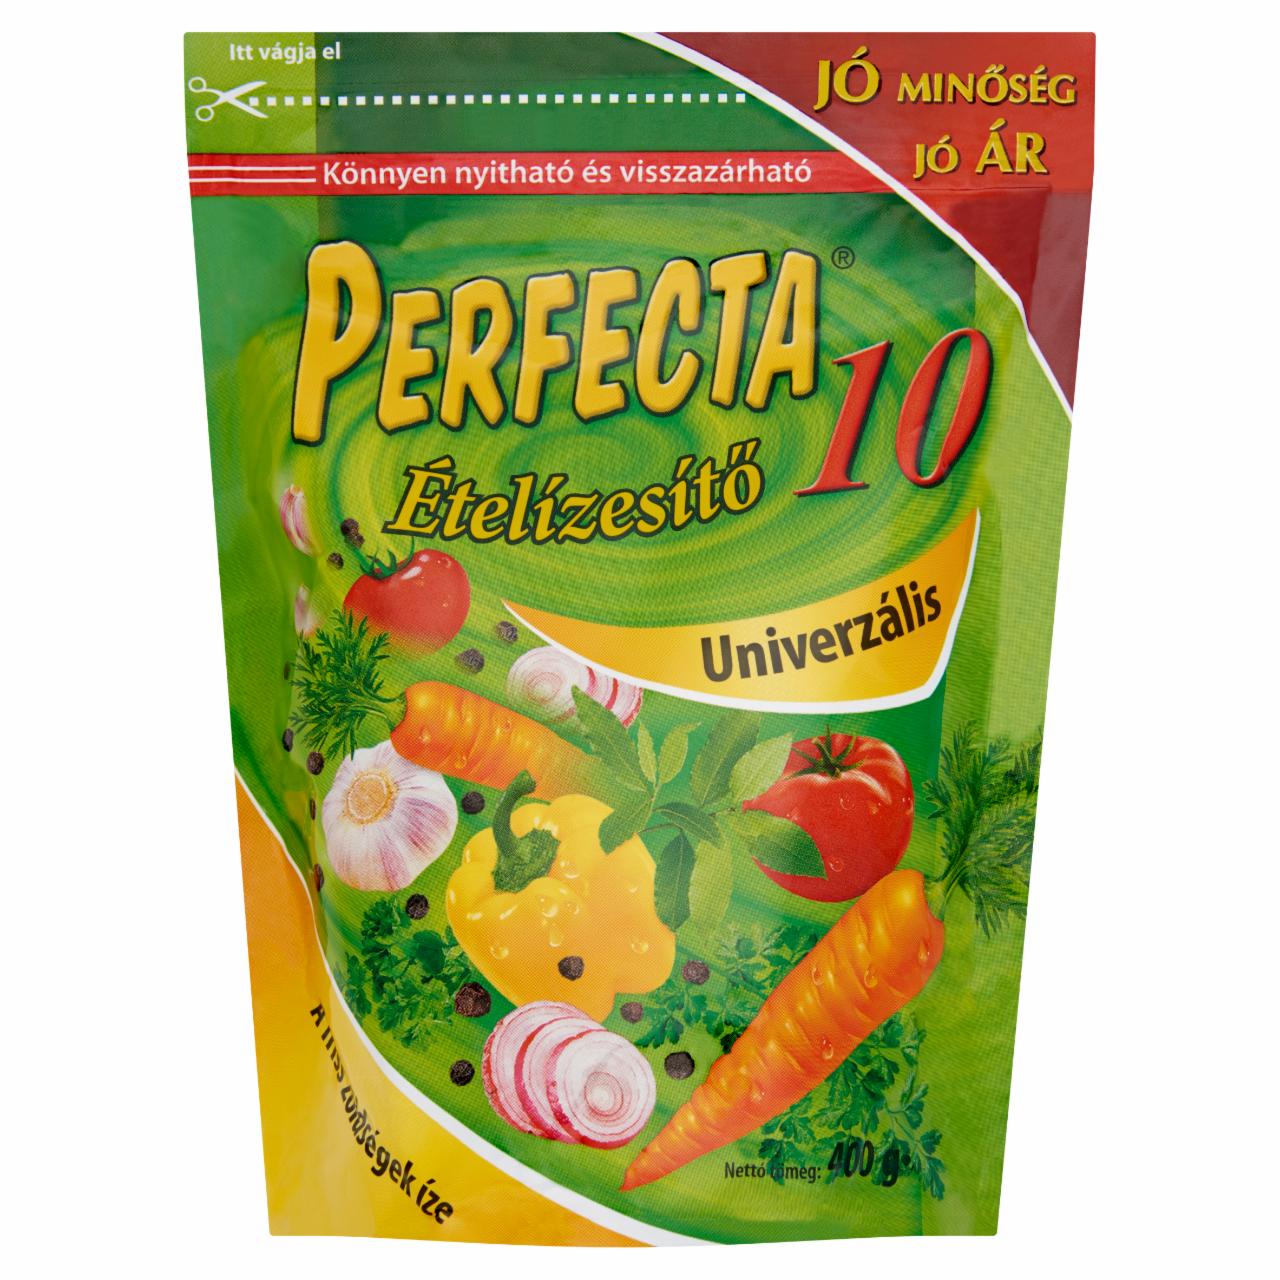 Képek - Perfecta 10 univerzális ételízesítő 400 g